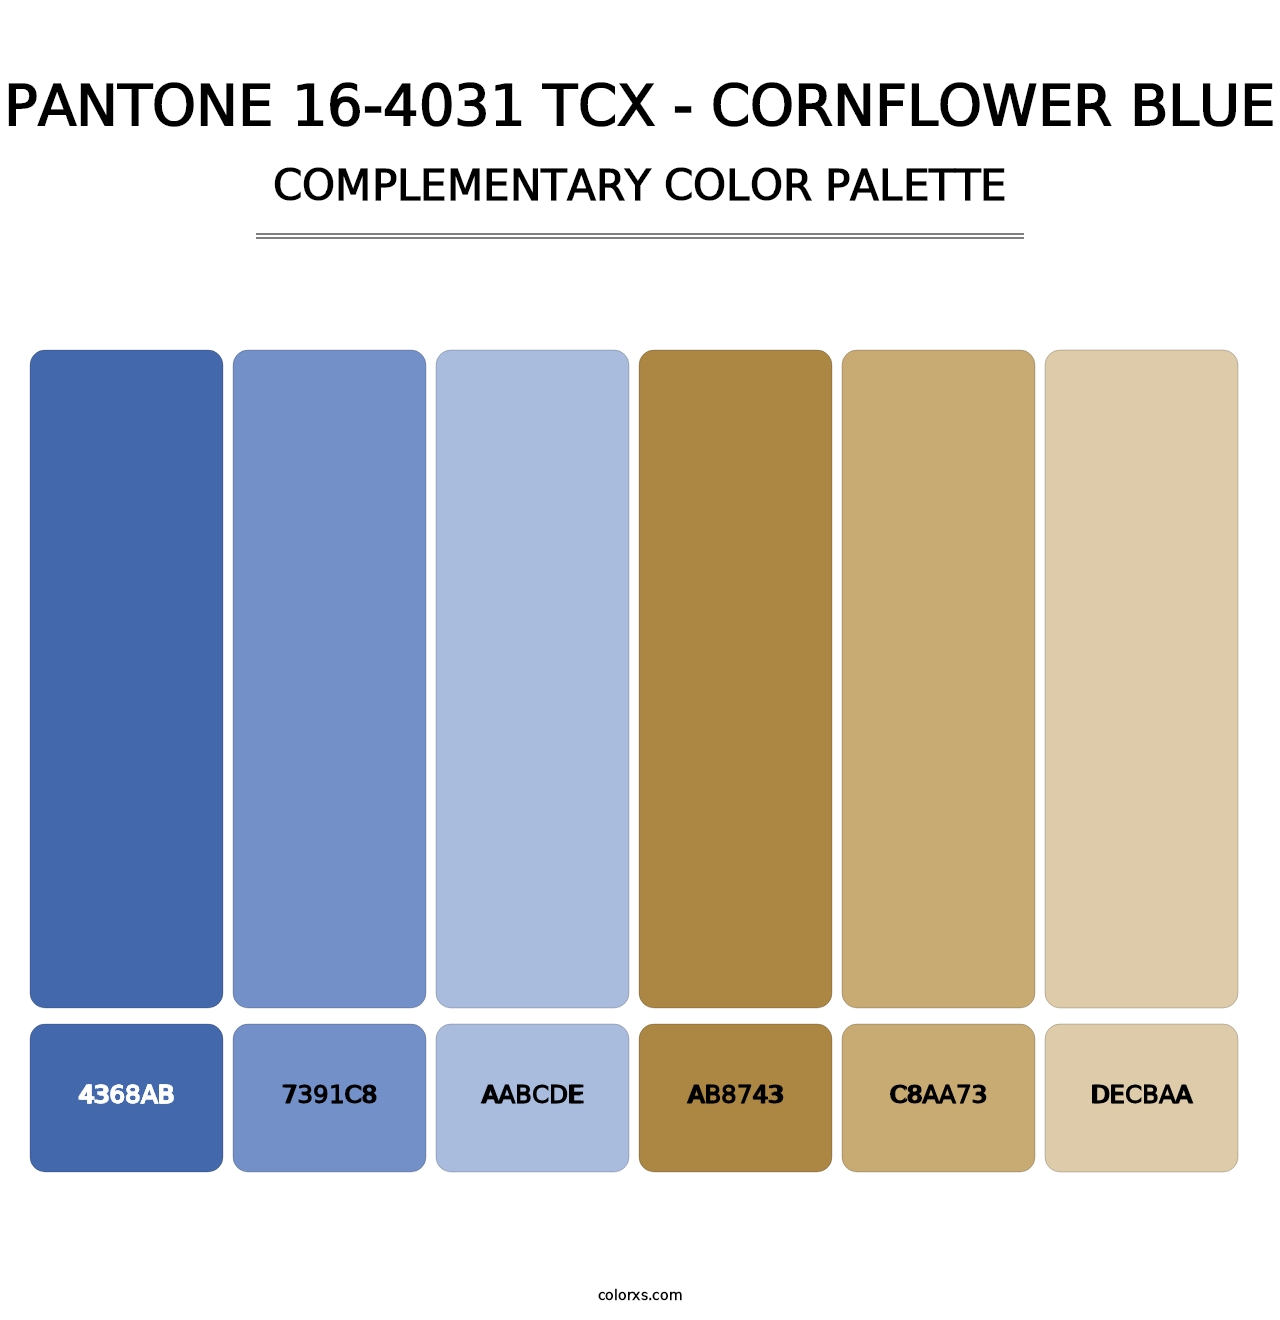 PANTONE 16-4031 TCX - Cornflower Blue - Complementary Color Palette